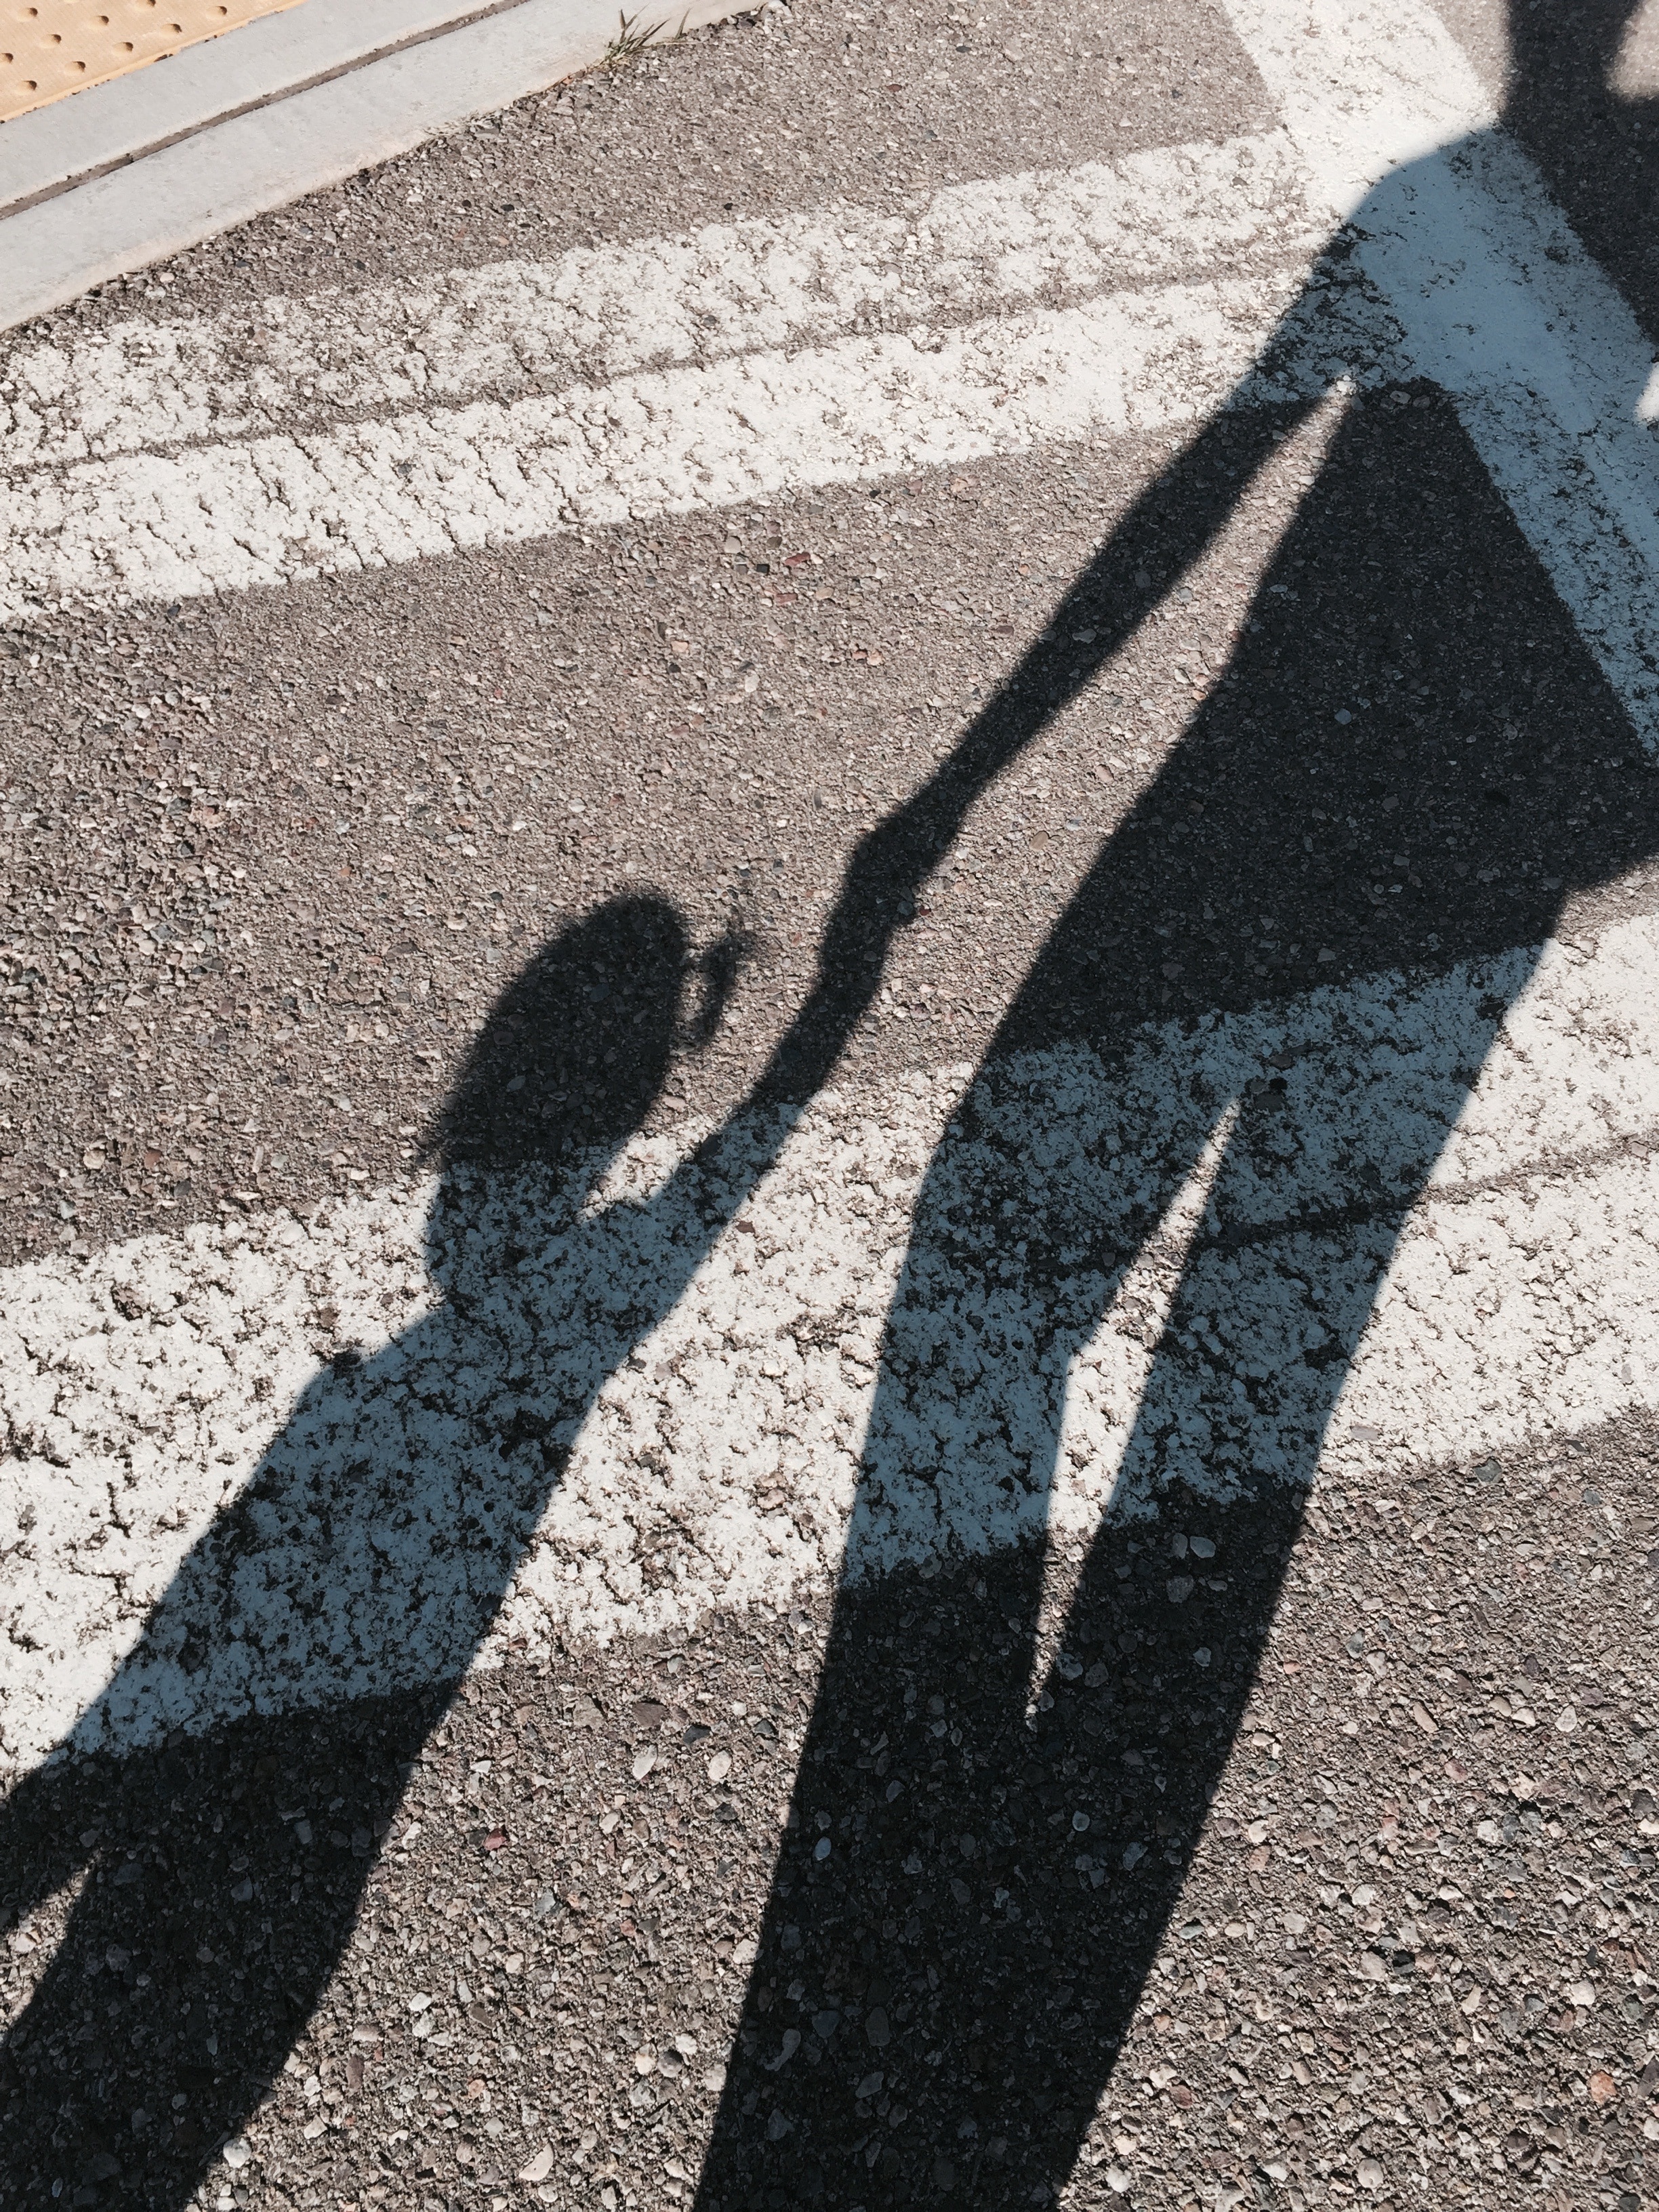 human and girl shadow